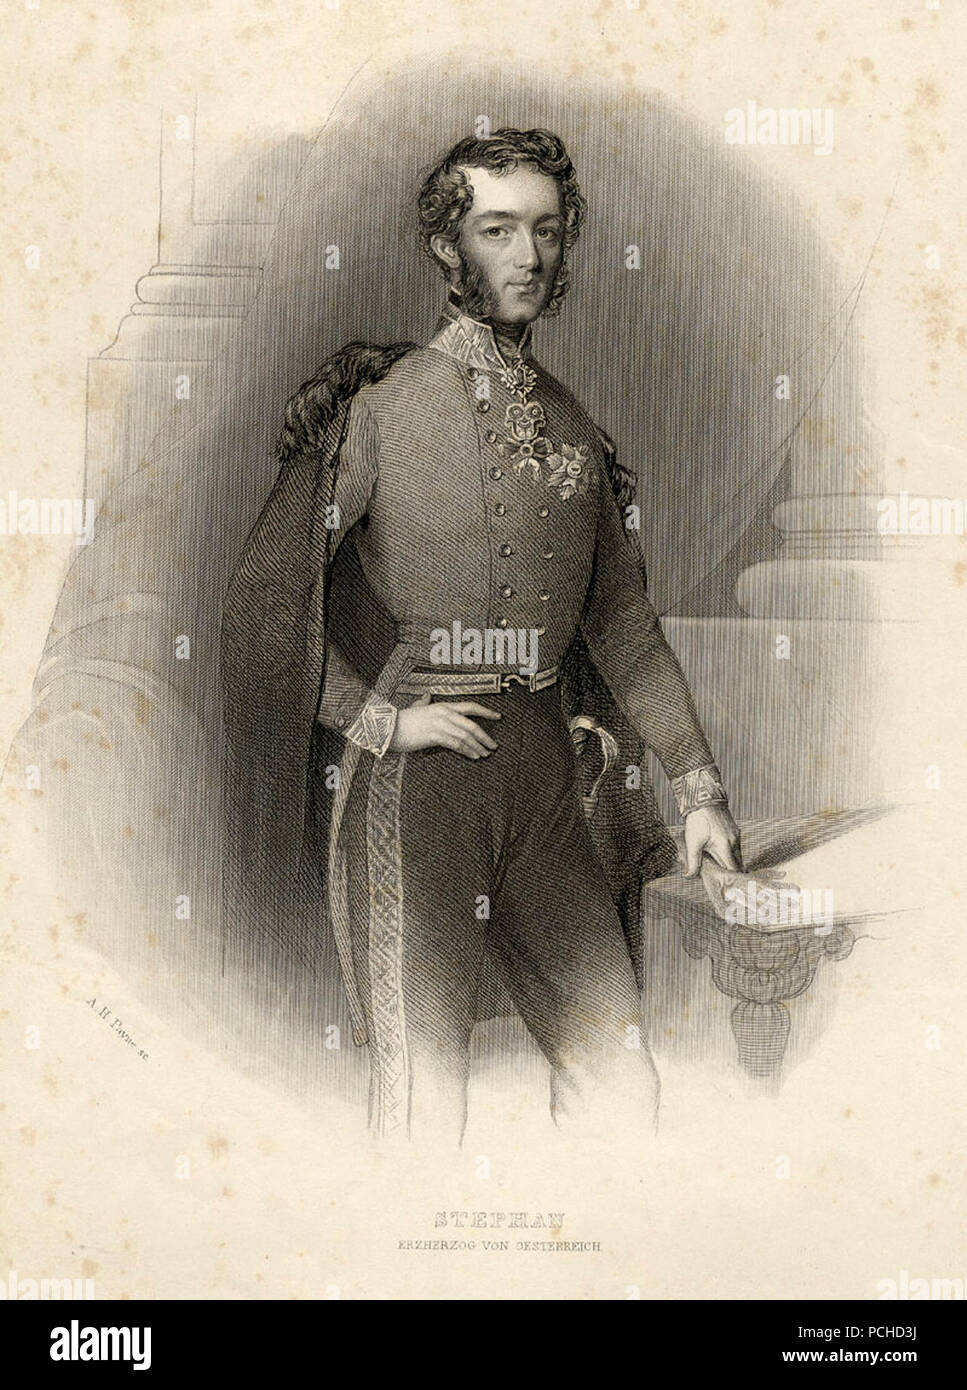 Albert Henry Payne Stephan Erzherzog von Österreich c1840 ubs G 0818 II. Stock Photo